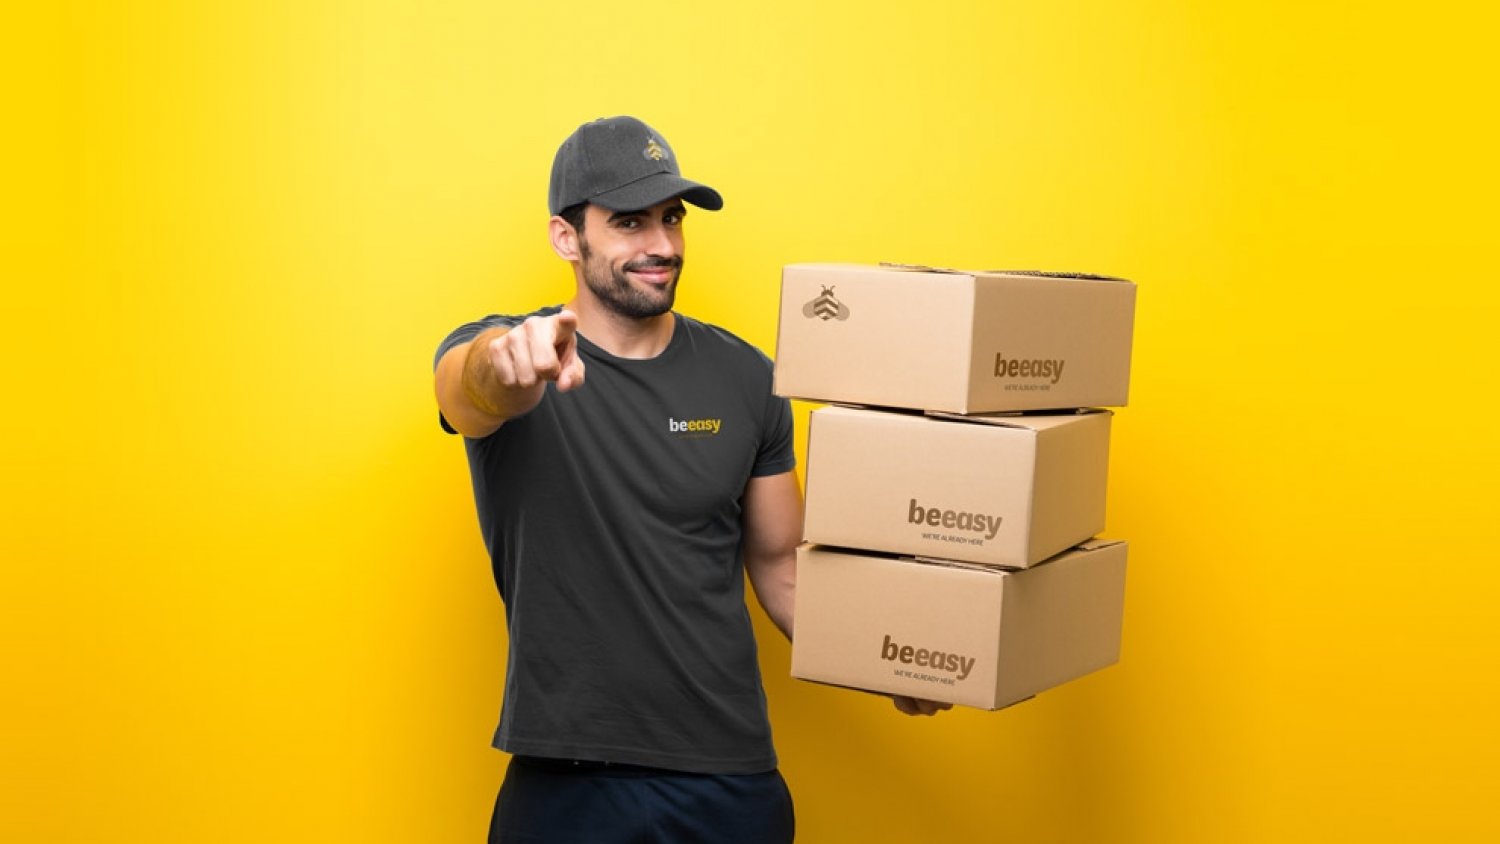 Beeasy, la startup de reparto, comienza sus operaciones en Madrid